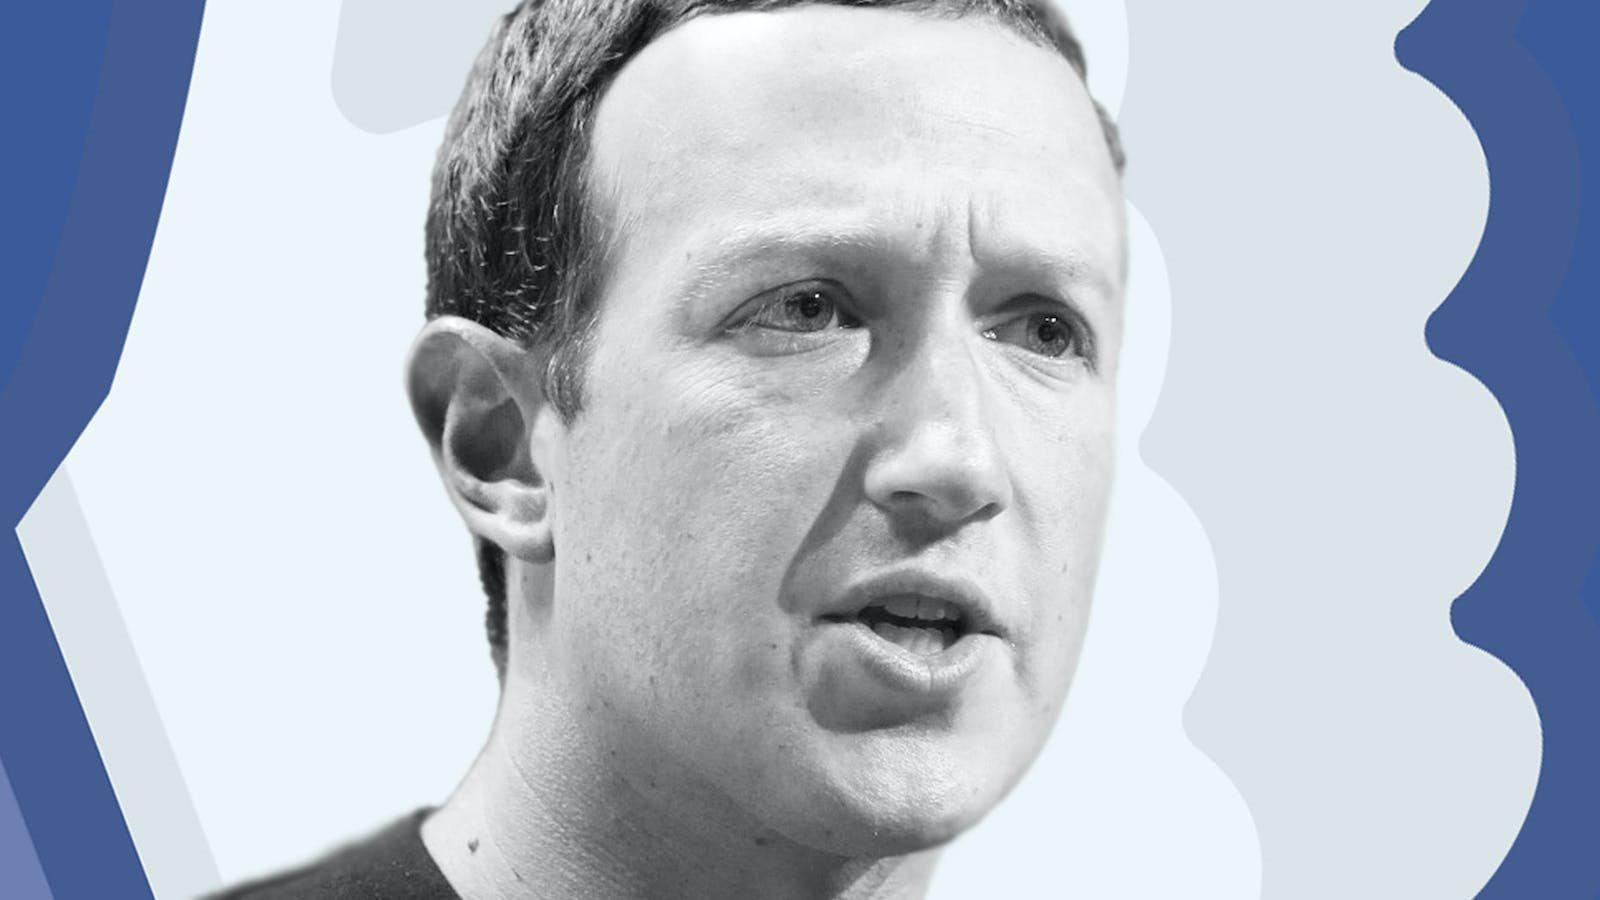 Chuỗi ngày đen tối của Mark Zuckerberg: Mỗi sáng thức dậy cảm giác như 'bị đấm vào bụng', đốt chục tỷ USD vào vũ trụ ảo chỉ tạo ra những thứ 'nực cười'